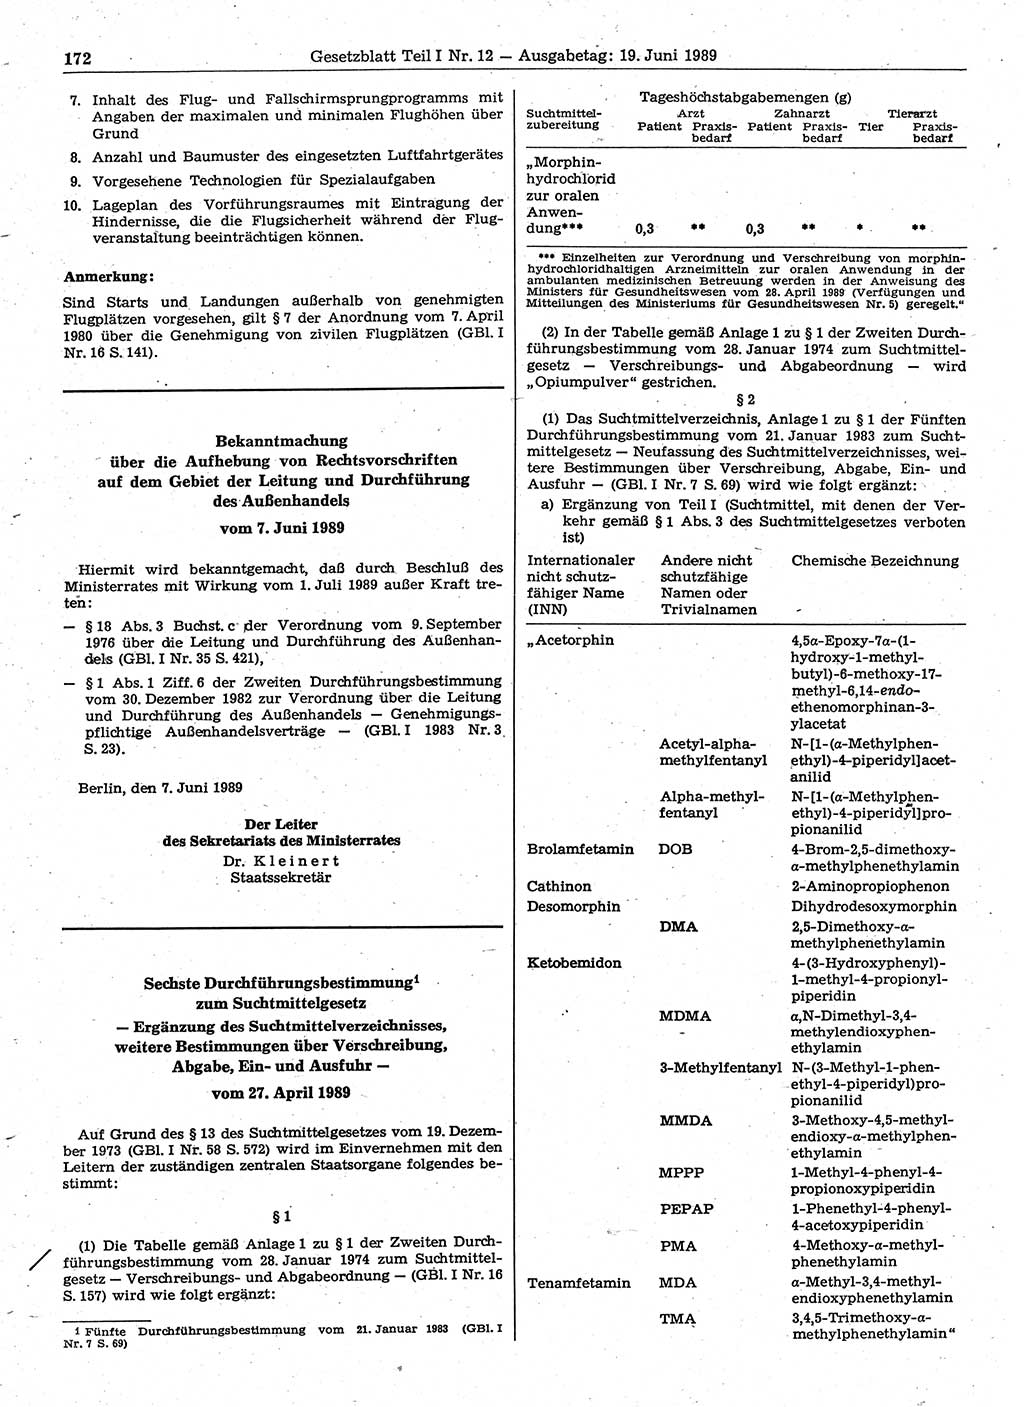 Gesetzblatt (GBl.) der Deutschen Demokratischen Republik (DDR) Teil Ⅰ 1989, Seite 172 (GBl. DDR Ⅰ 1989, S. 172)